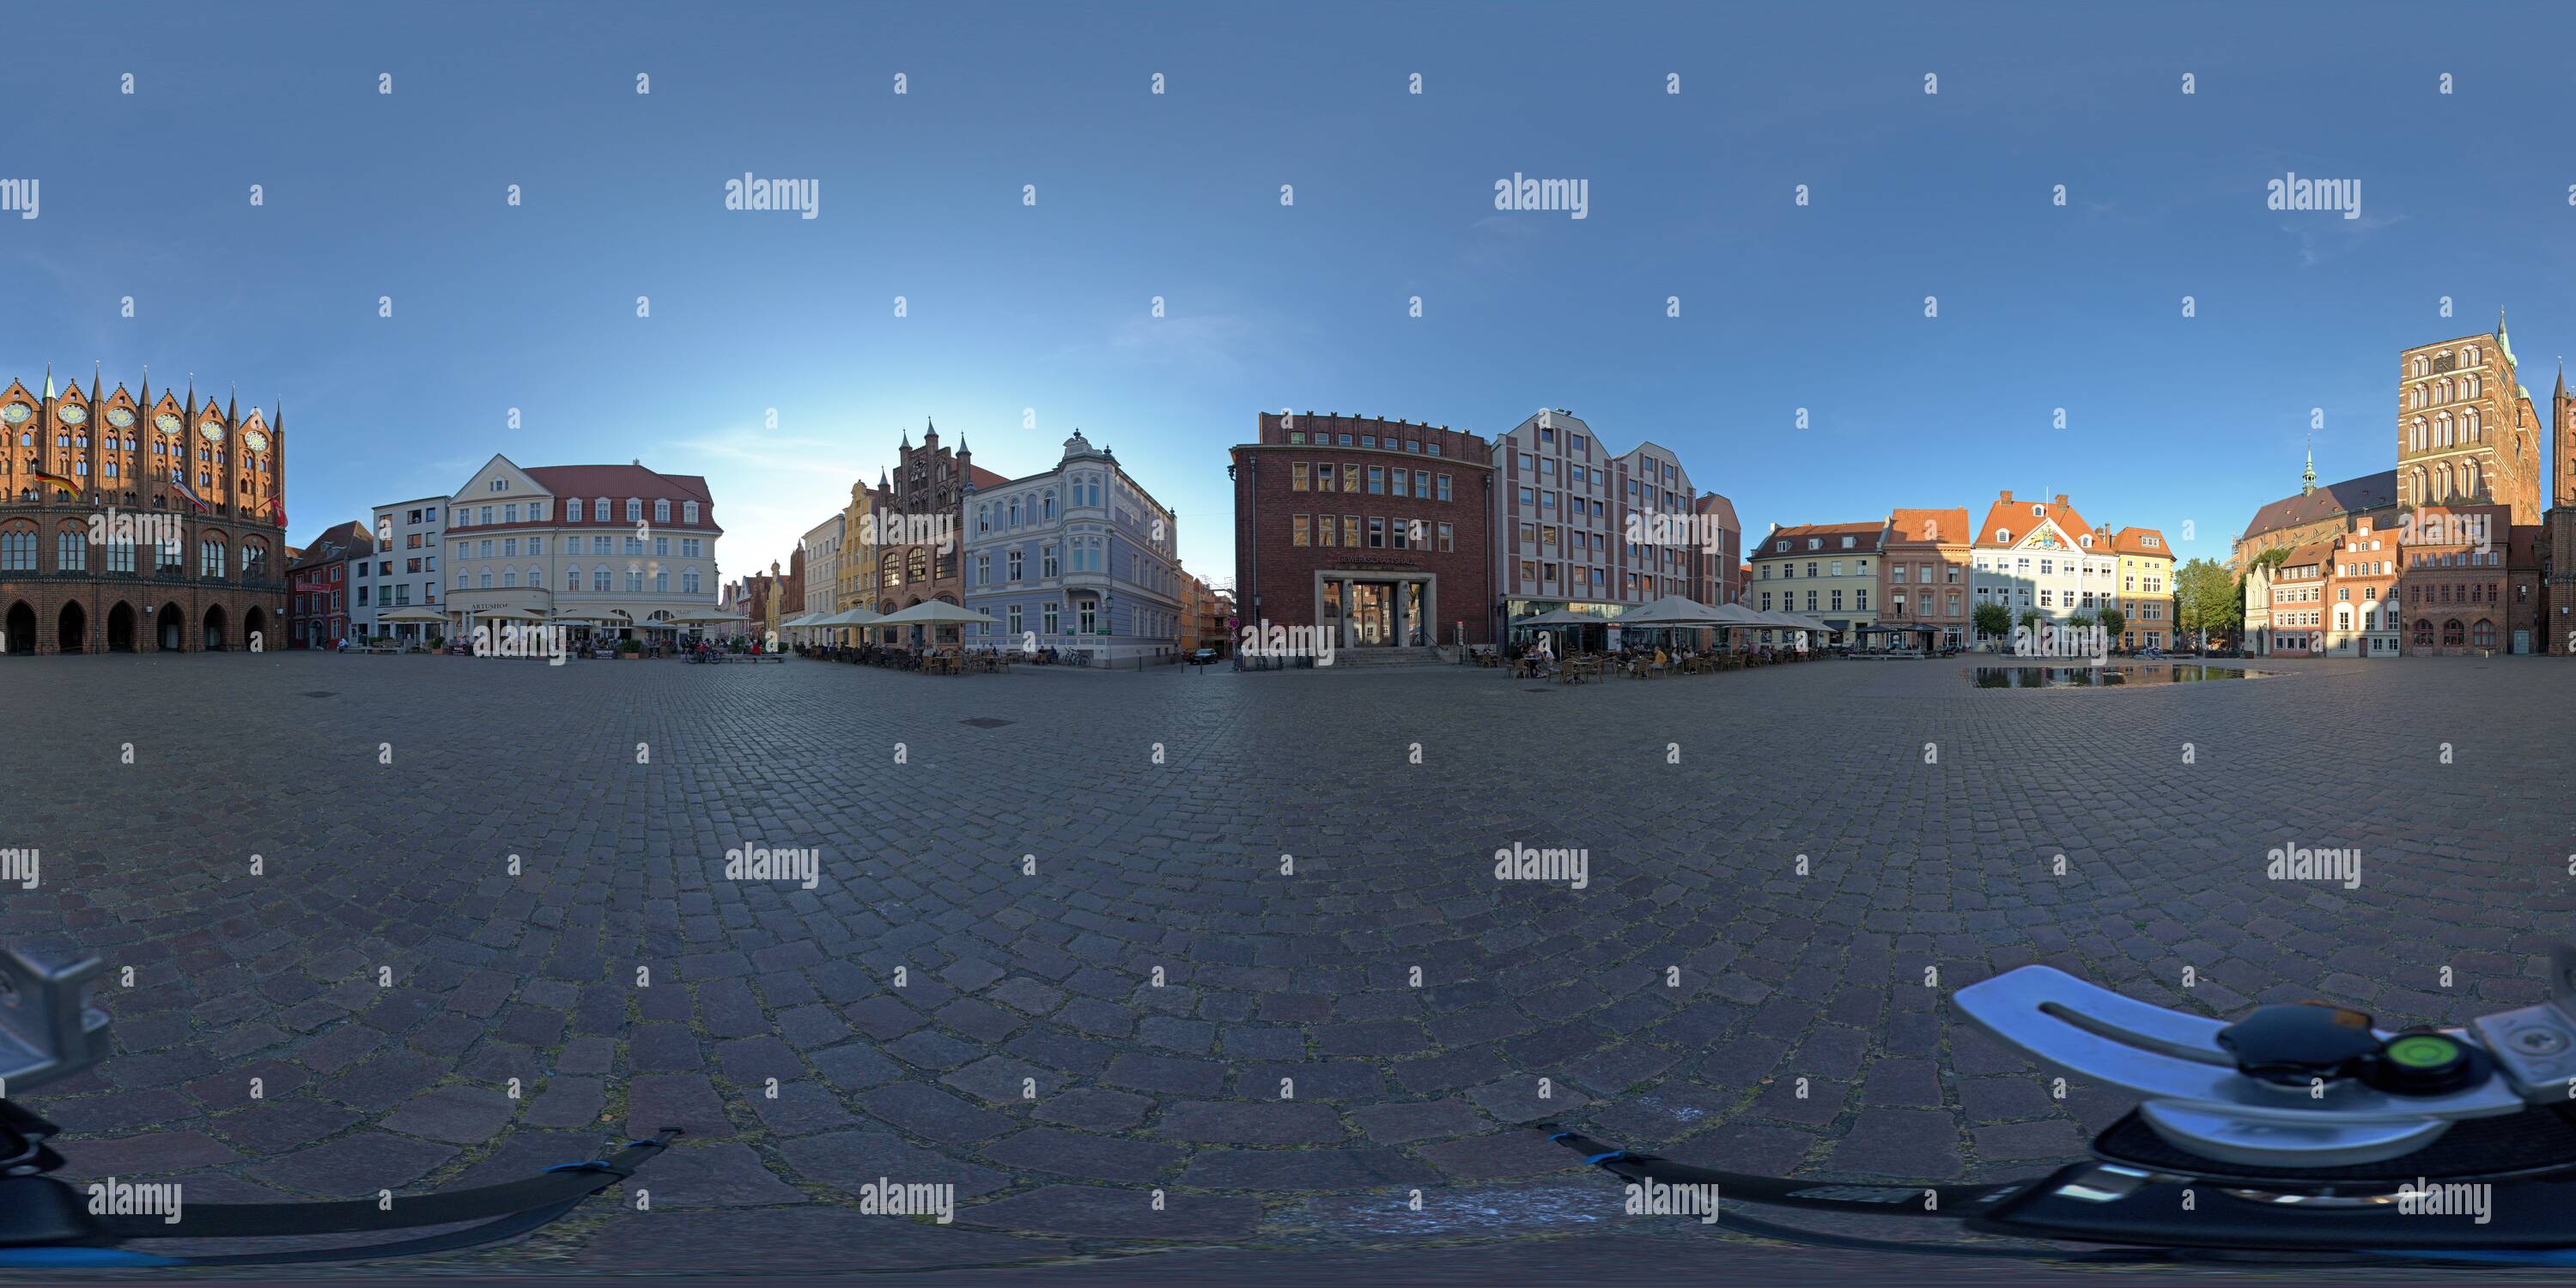 Vue panoramique à 360° de Photo à 360 degrés, place du marché de Stralsund, Mecklembourg-Poméranie-Occidentale, Allemagne